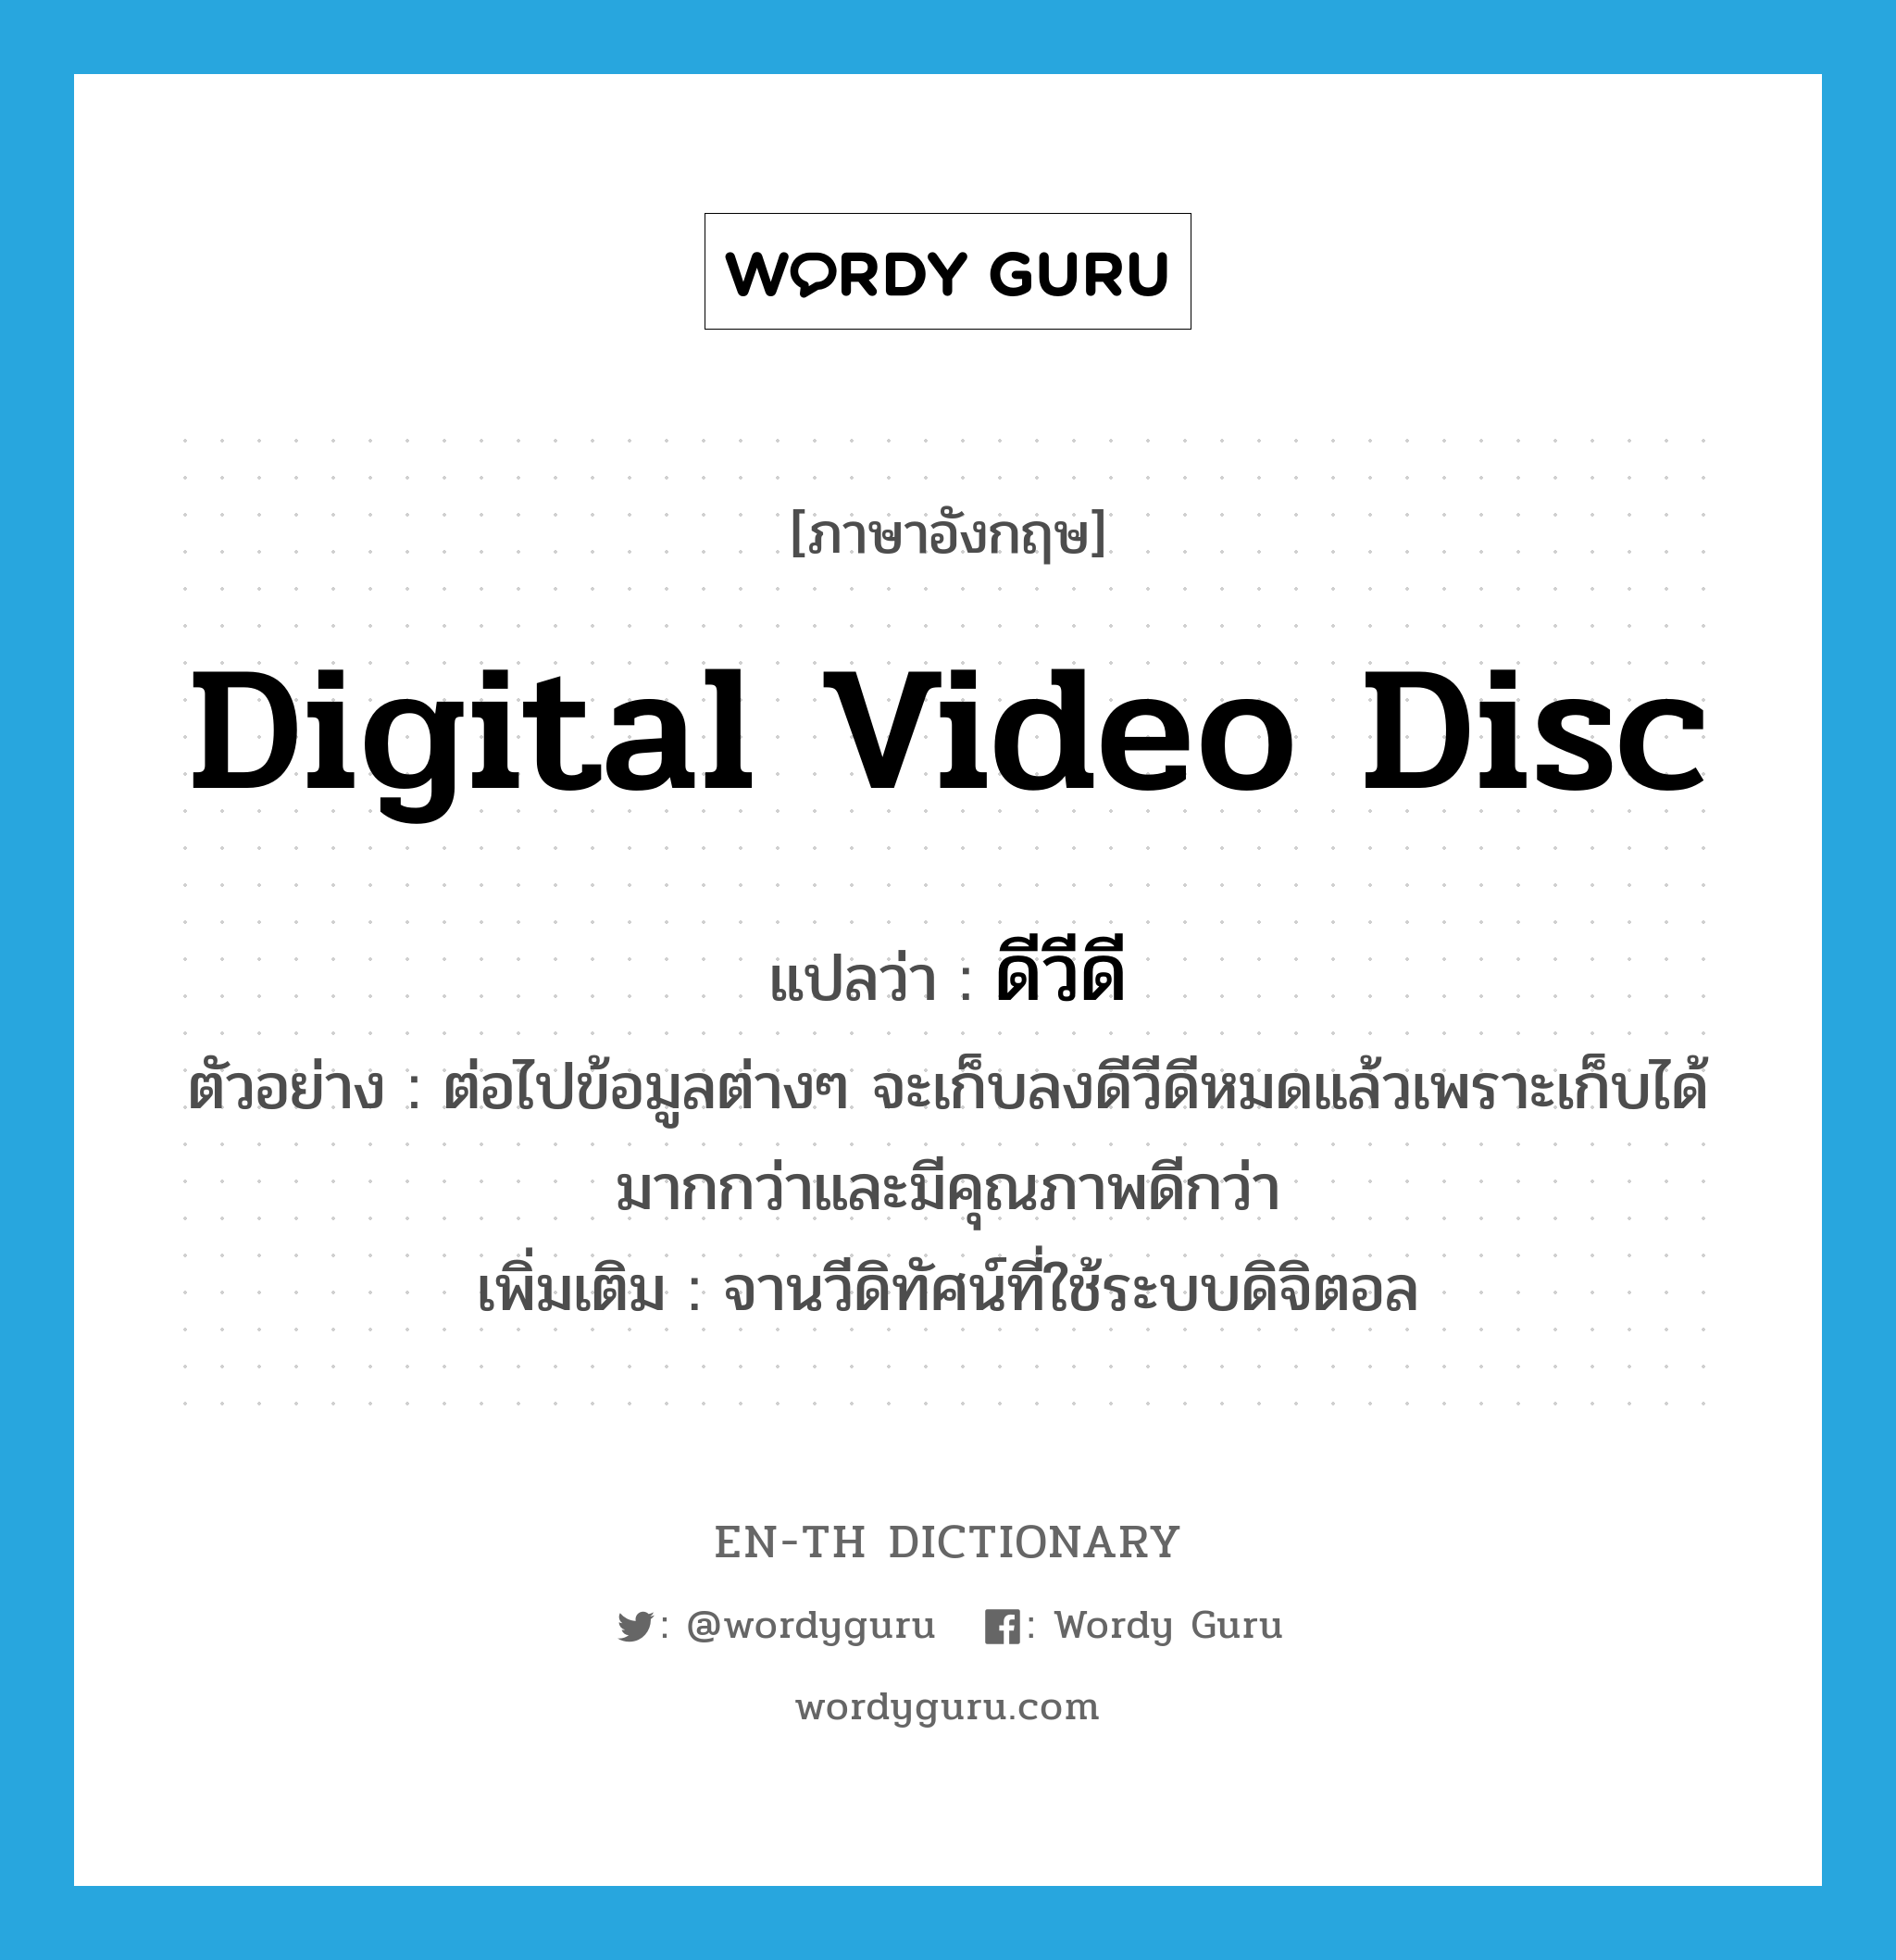 digital video disc แปลว่า?, คำศัพท์ภาษาอังกฤษ digital video disc แปลว่า ดีวีดี ประเภท N ตัวอย่าง ต่อไปข้อมูลต่างๆ จะเก็บลงดีวีดีหมดแล้วเพราะเก็บได้มากกว่าและมีคุณภาพดีกว่า เพิ่มเติม จานวีดิทัศน์ที่ใช้ระบบดิจิตอล หมวด N